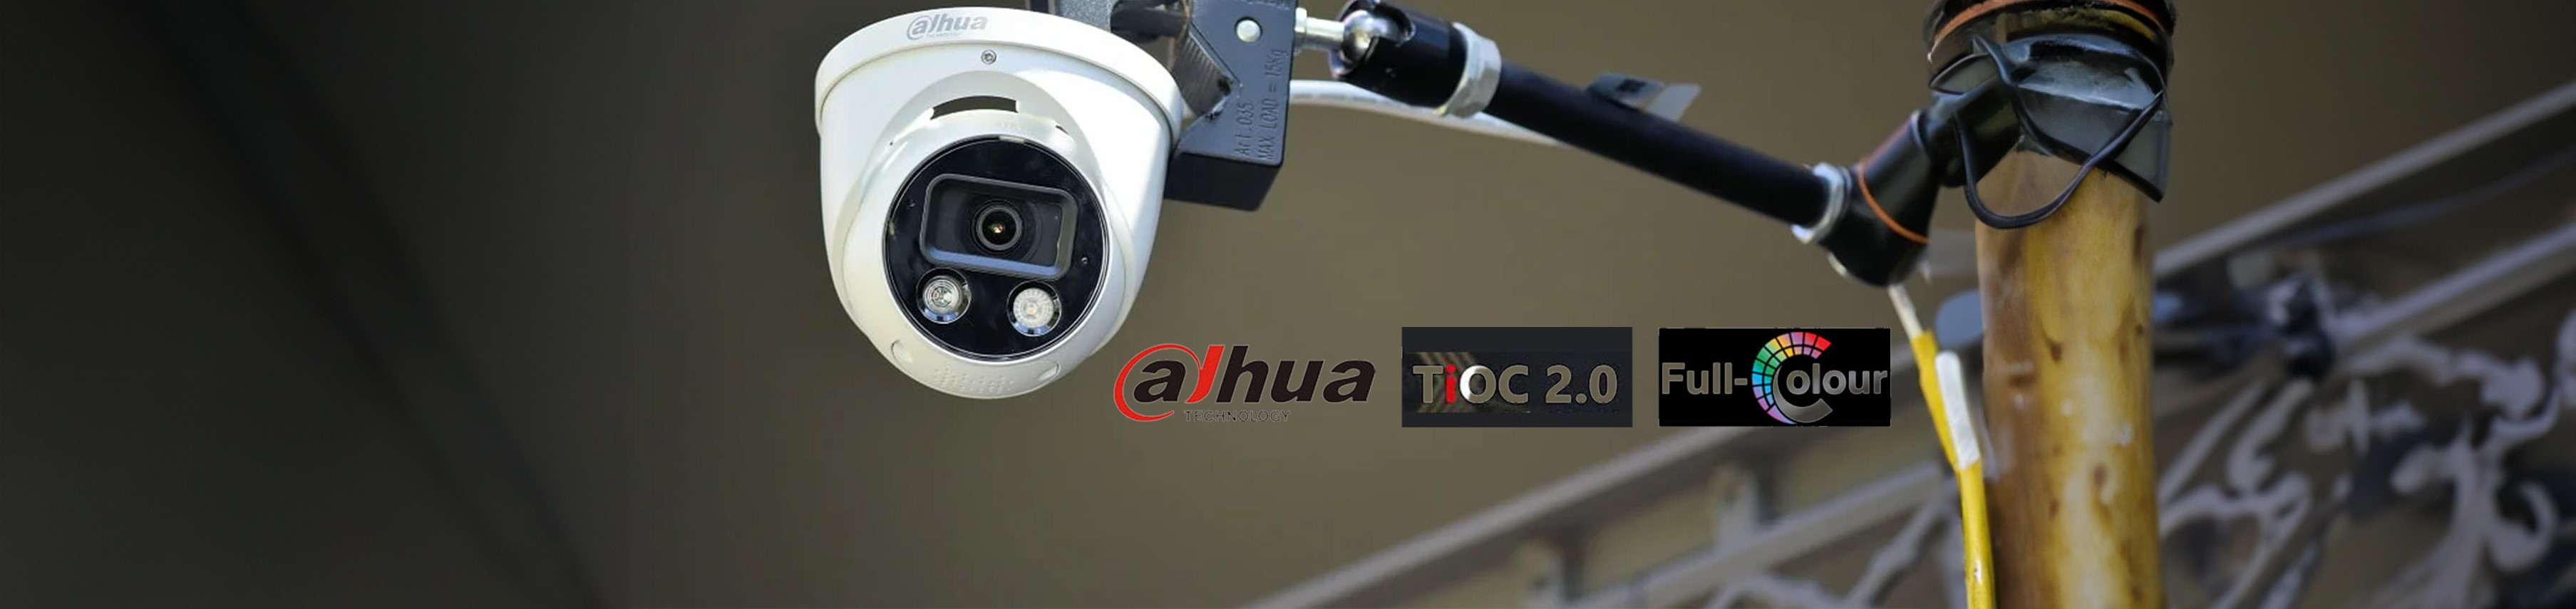 Dahua TIOC Turret Cameras